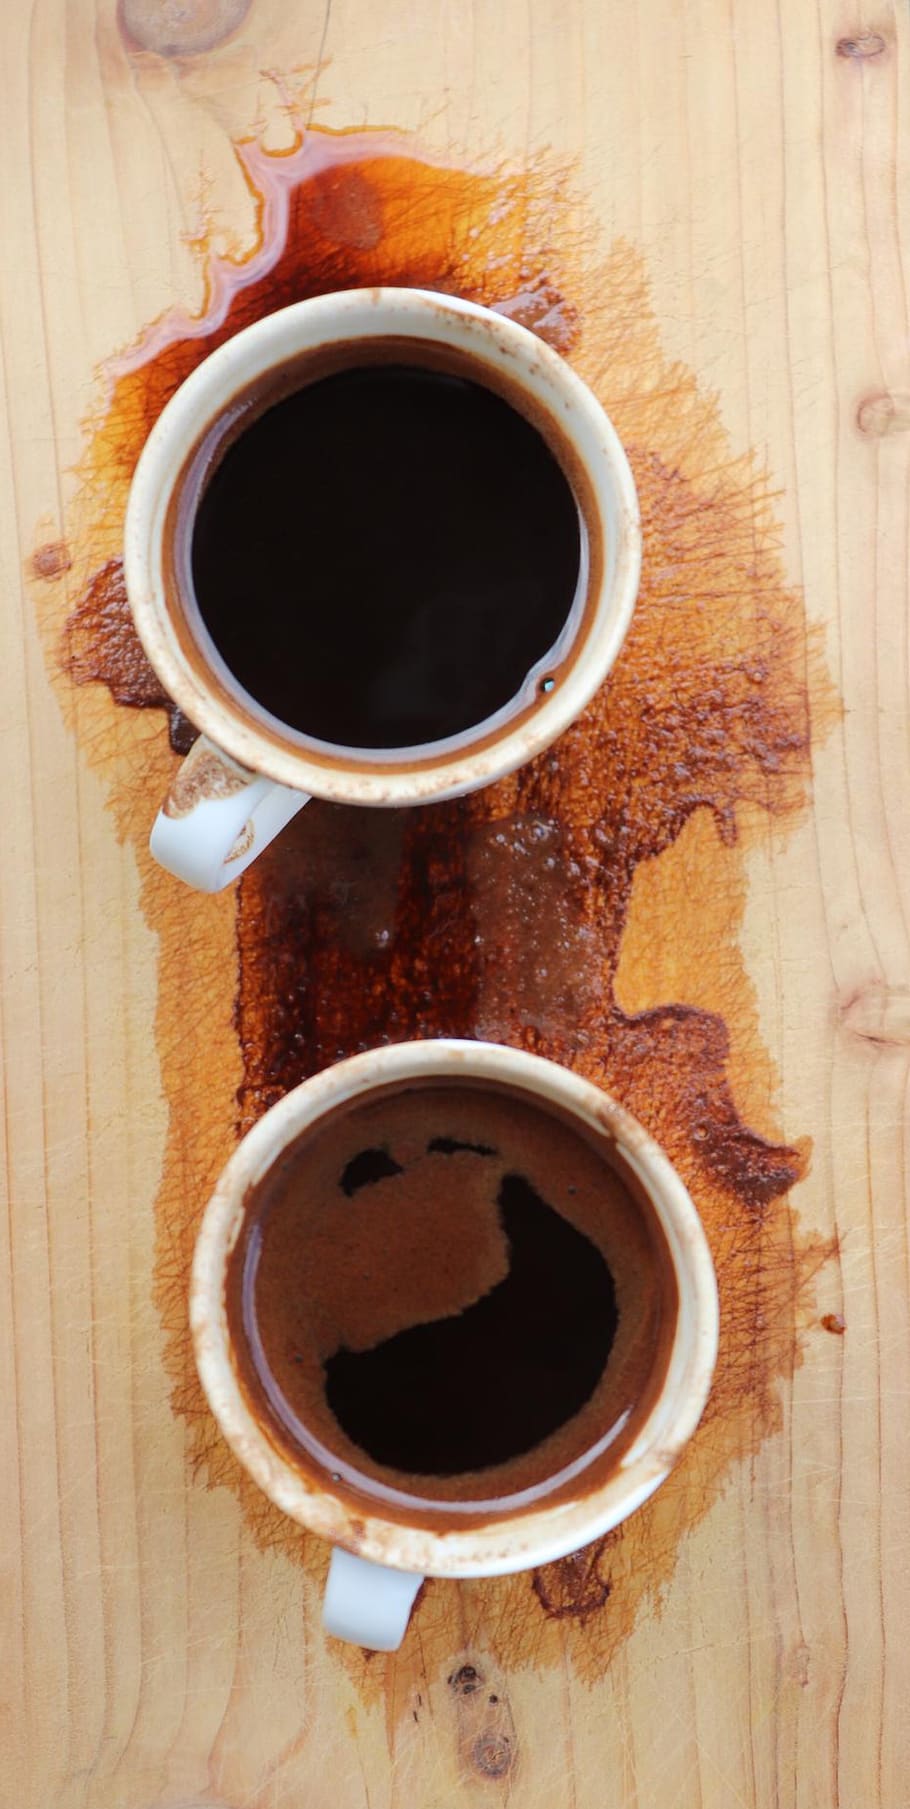 hora del café, café turco, tazas, con, negro, madera, arte, tarea, charco, café derramado